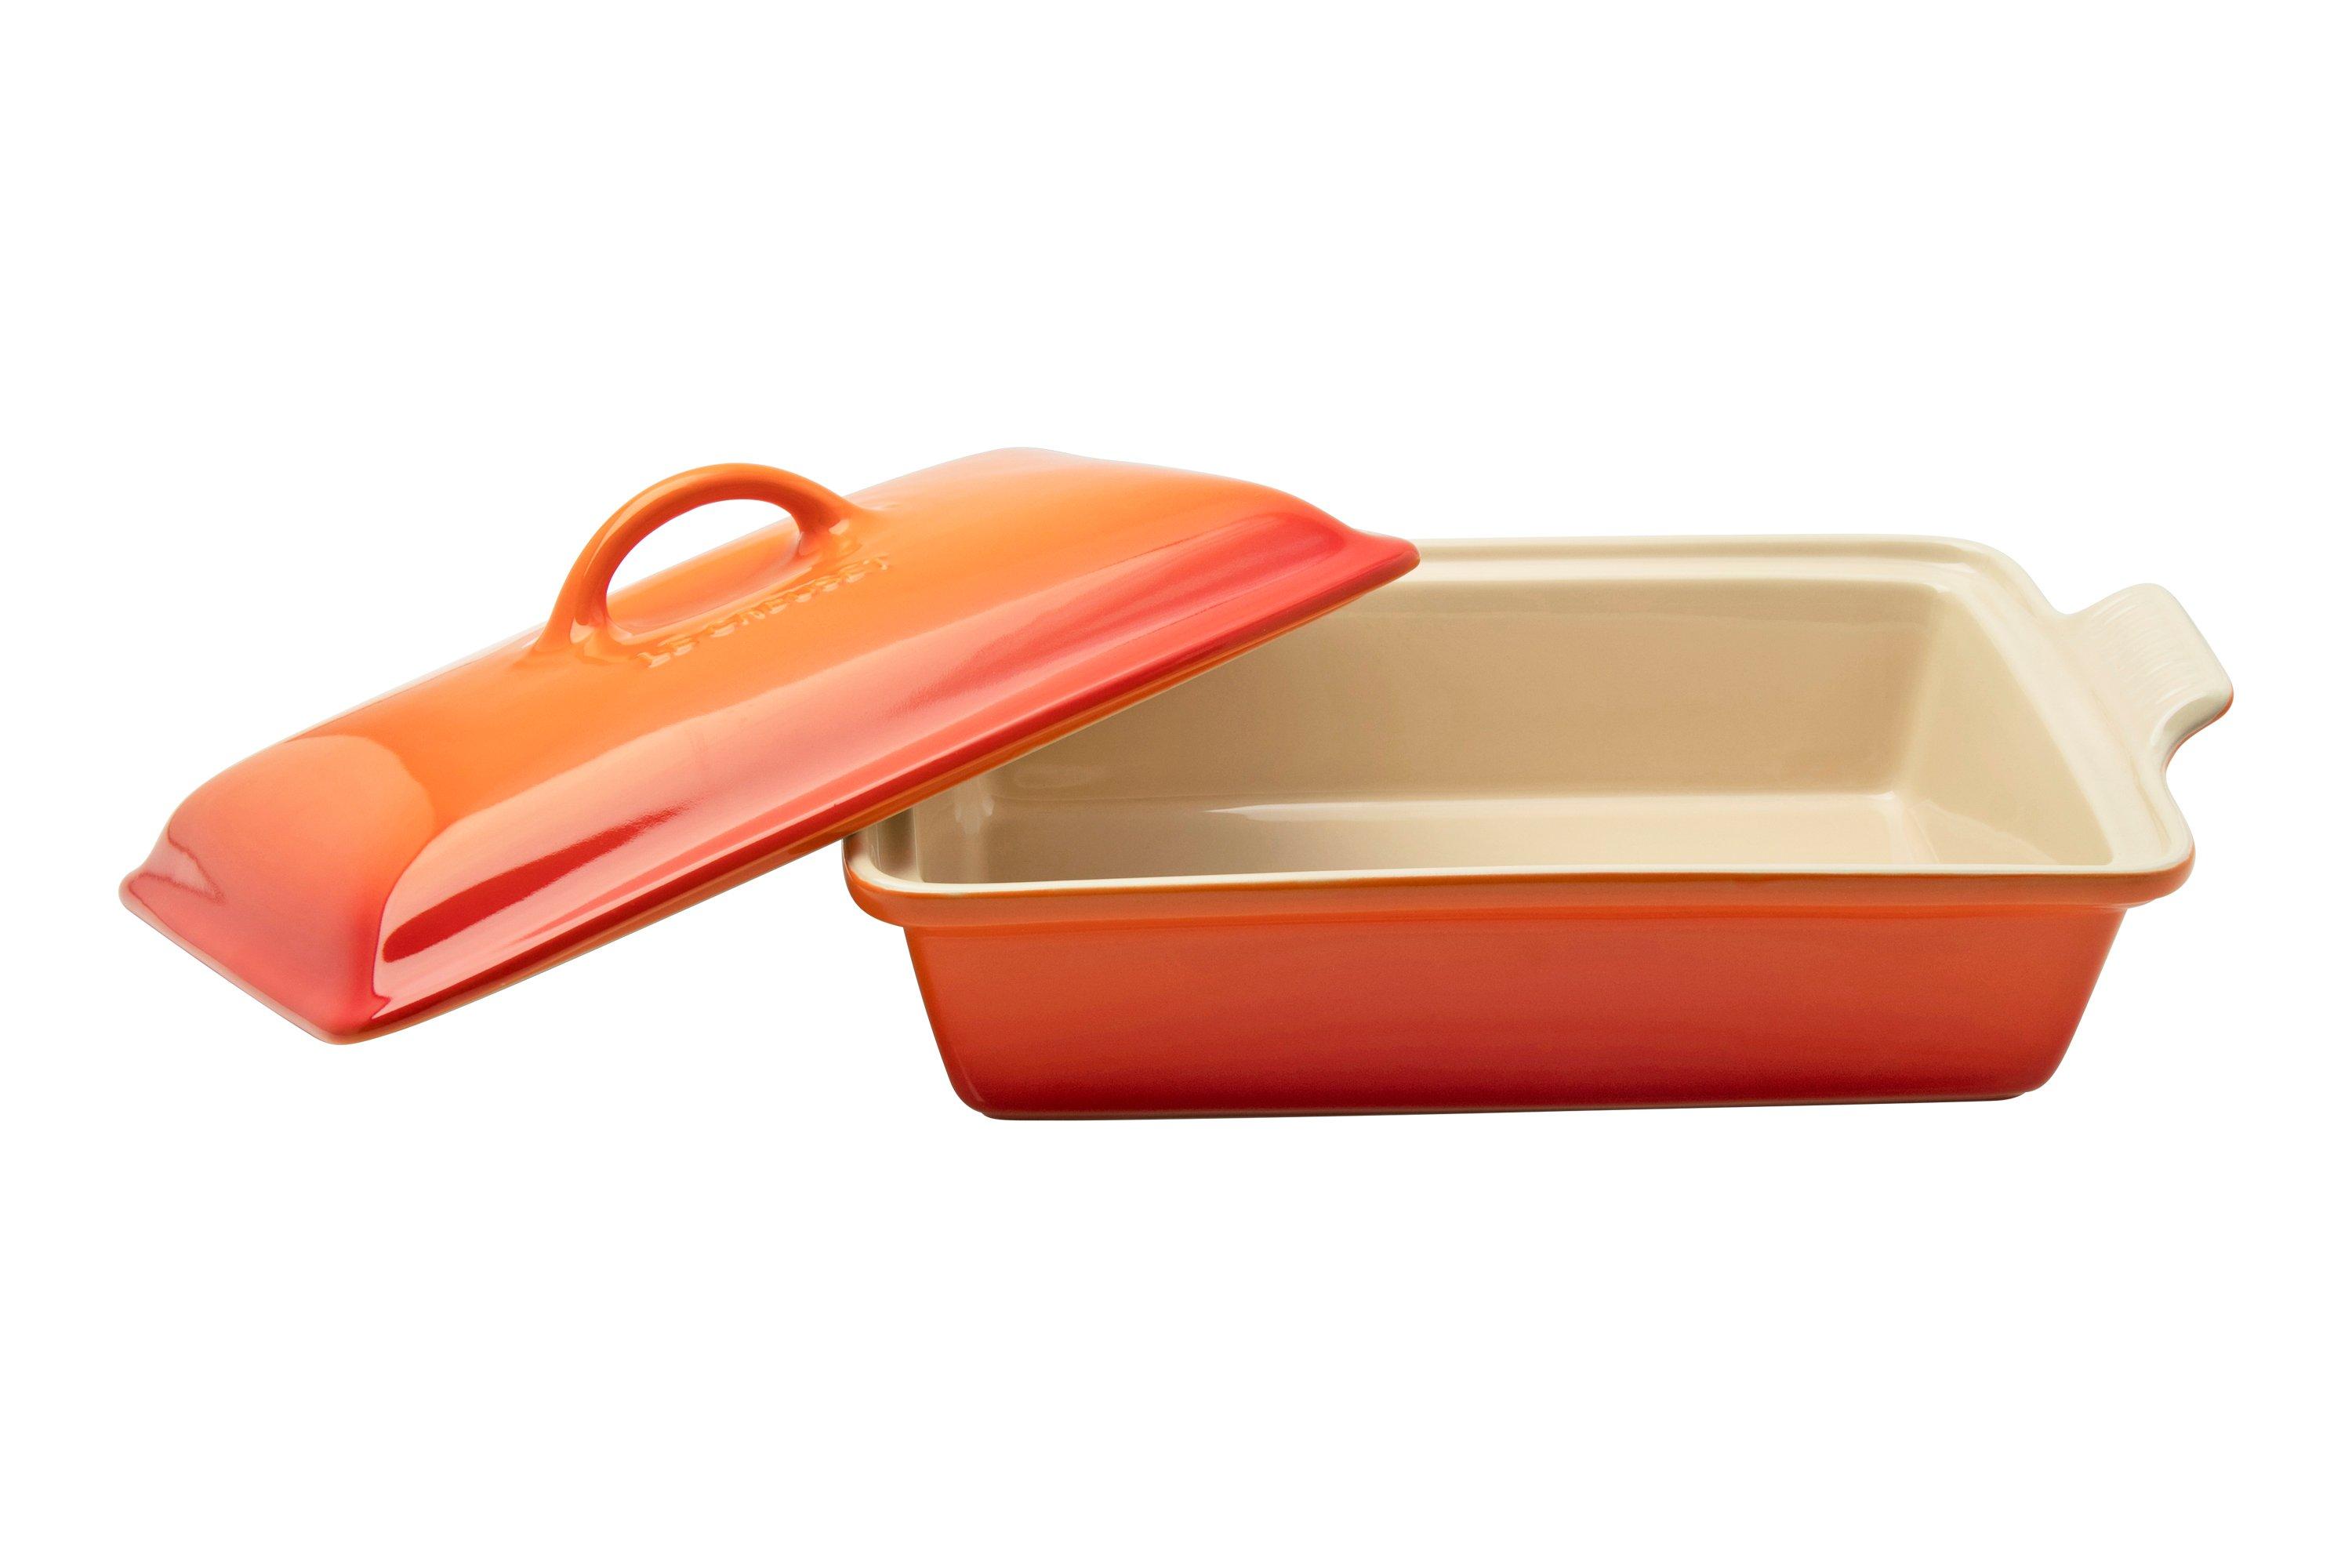 Le Creuset ovenschaal rechthoekig met deksel, 33 cm, oranje rood | kopen bij knivesandtools.be